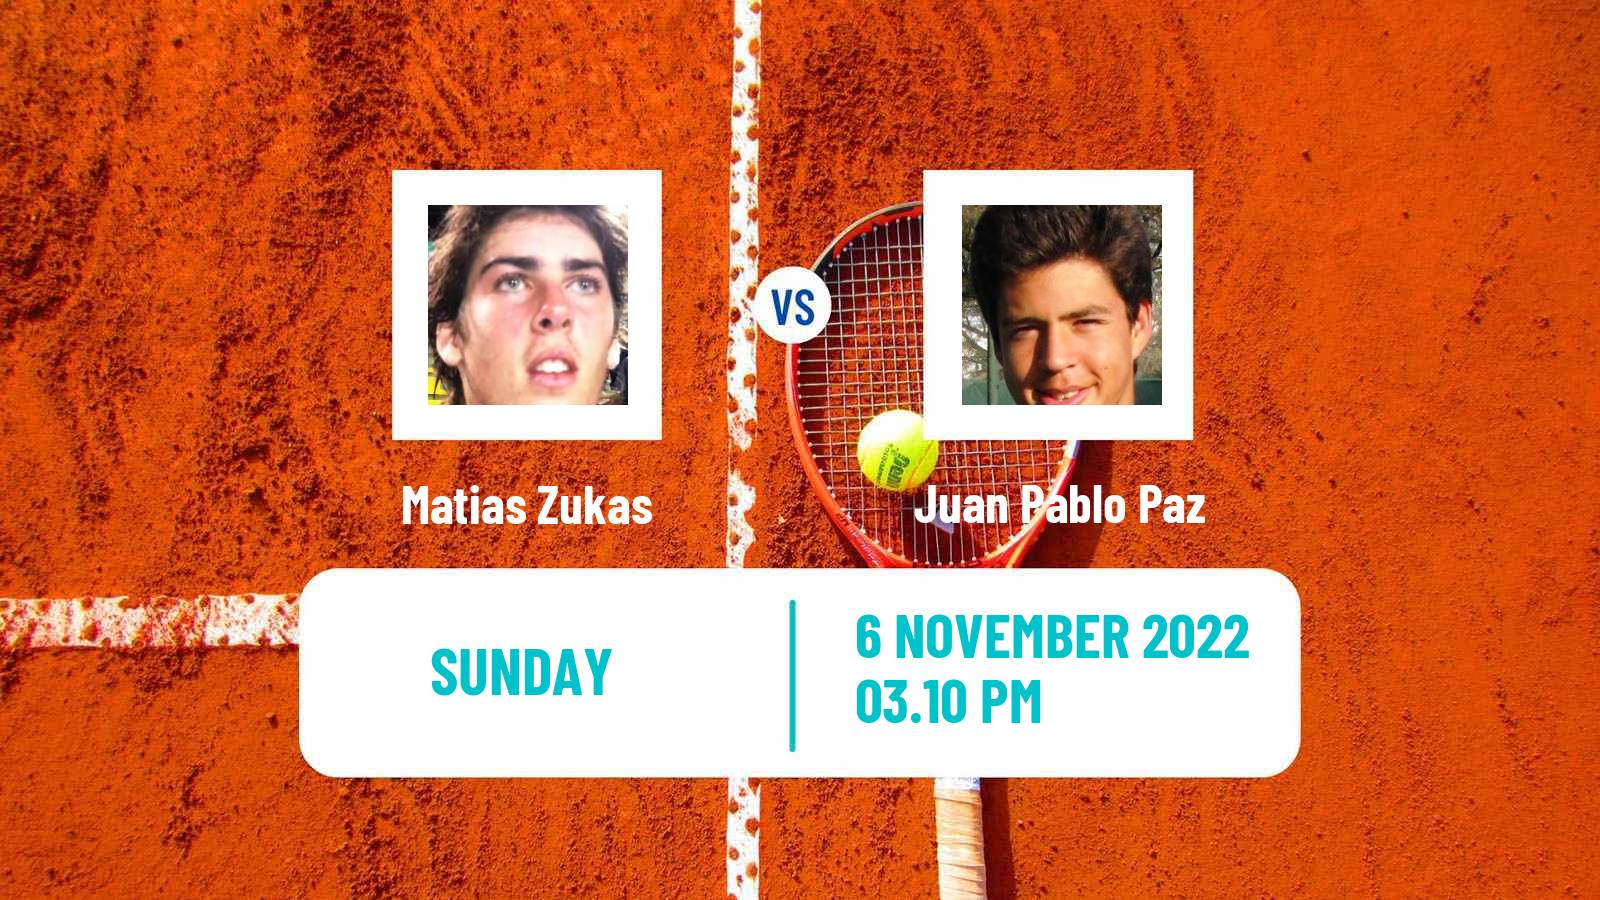 Tennis ATP Challenger Matias Zukas - Juan Pablo Paz